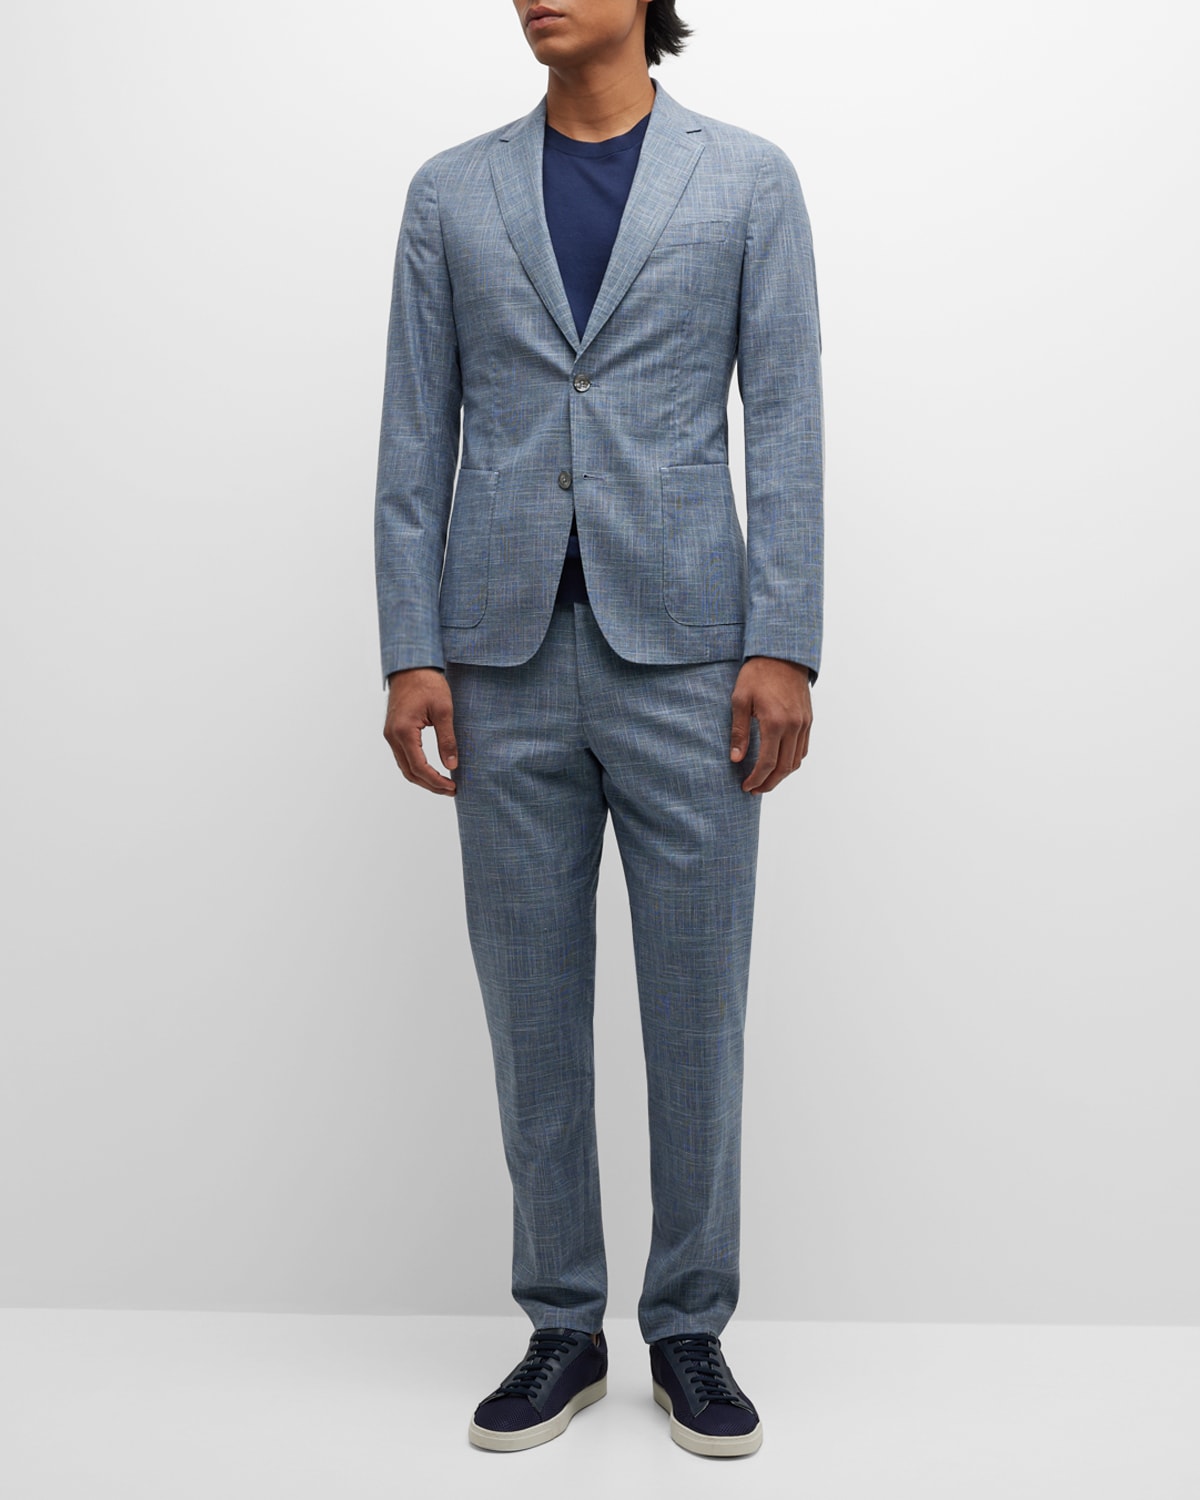 Men's Modern Fit Two-Piece Suit